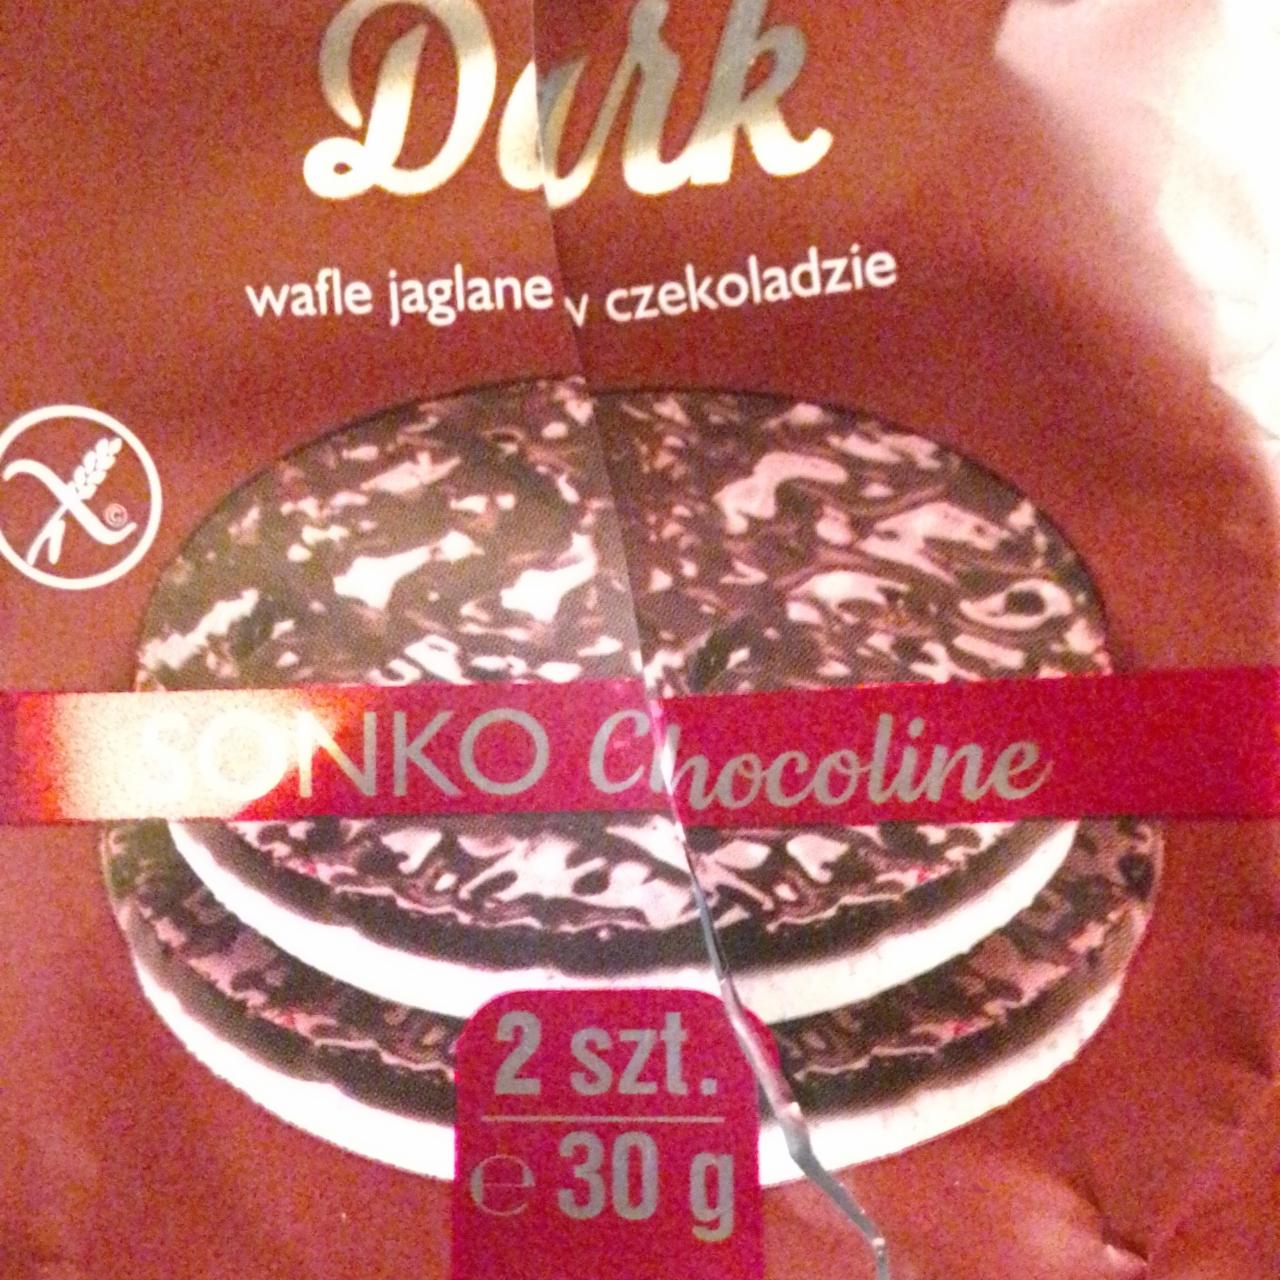 Фото - рисовые вафли в темном шоколаде Sonko